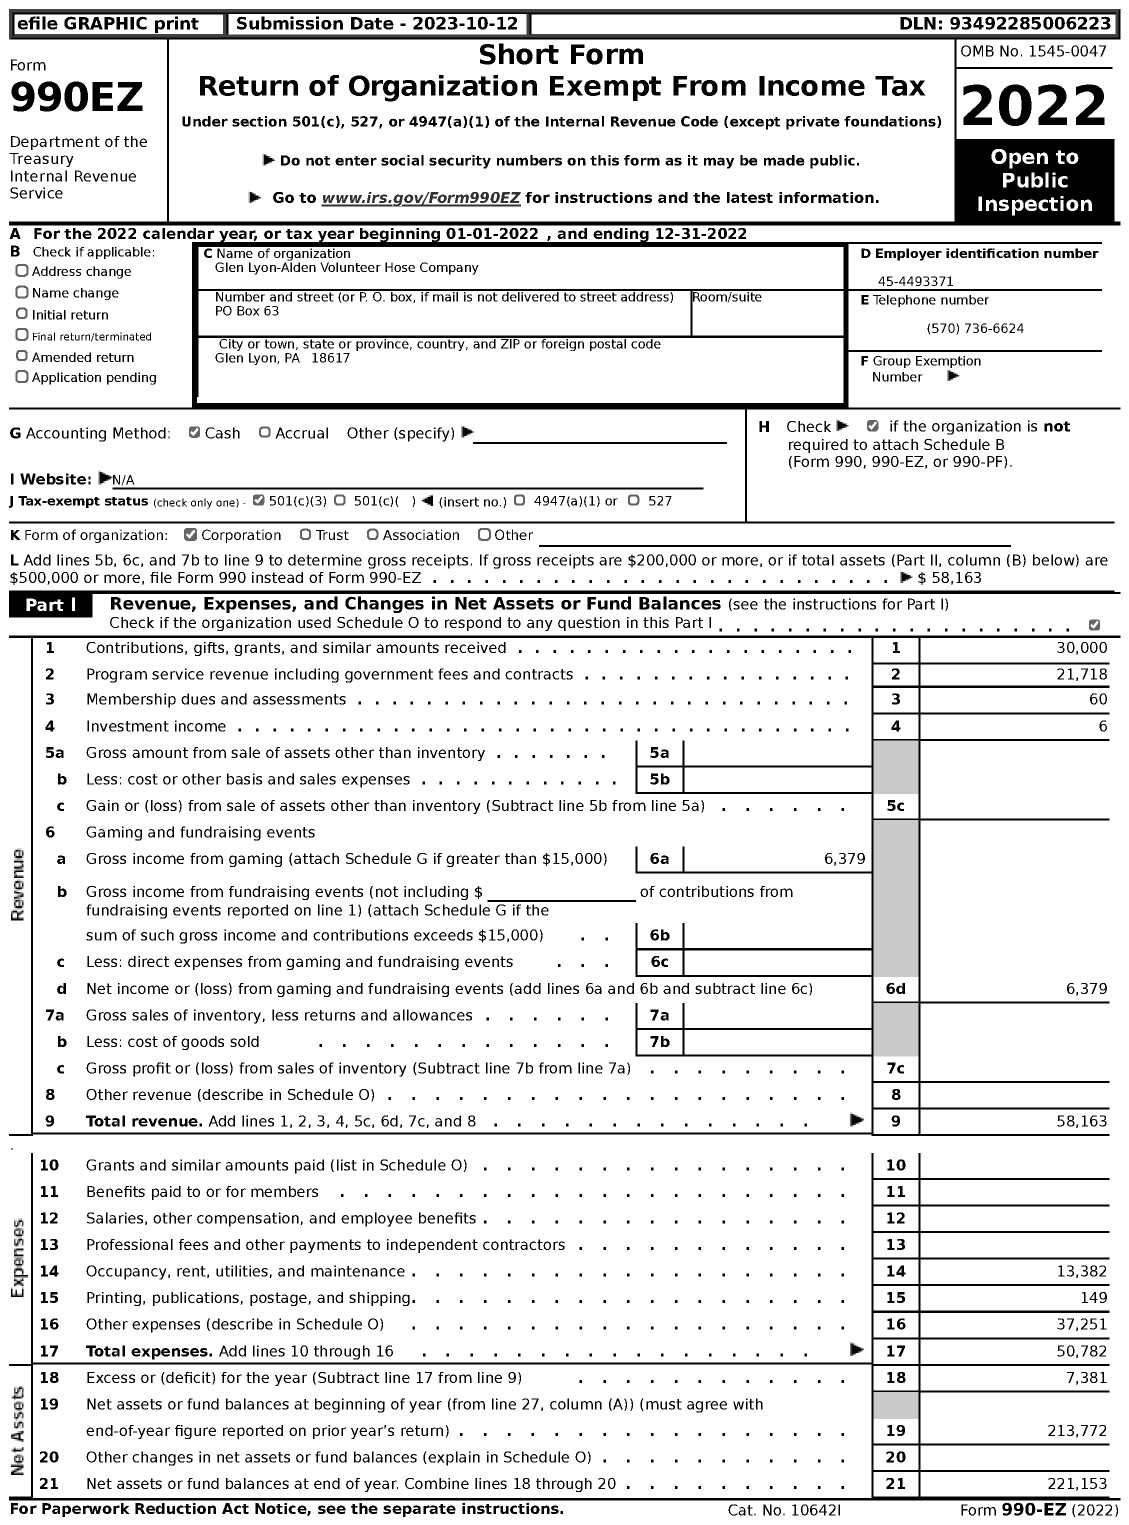 Image of first page of 2022 Form 990EZ for Glen Lyon-Alden Volunteer Hose Company